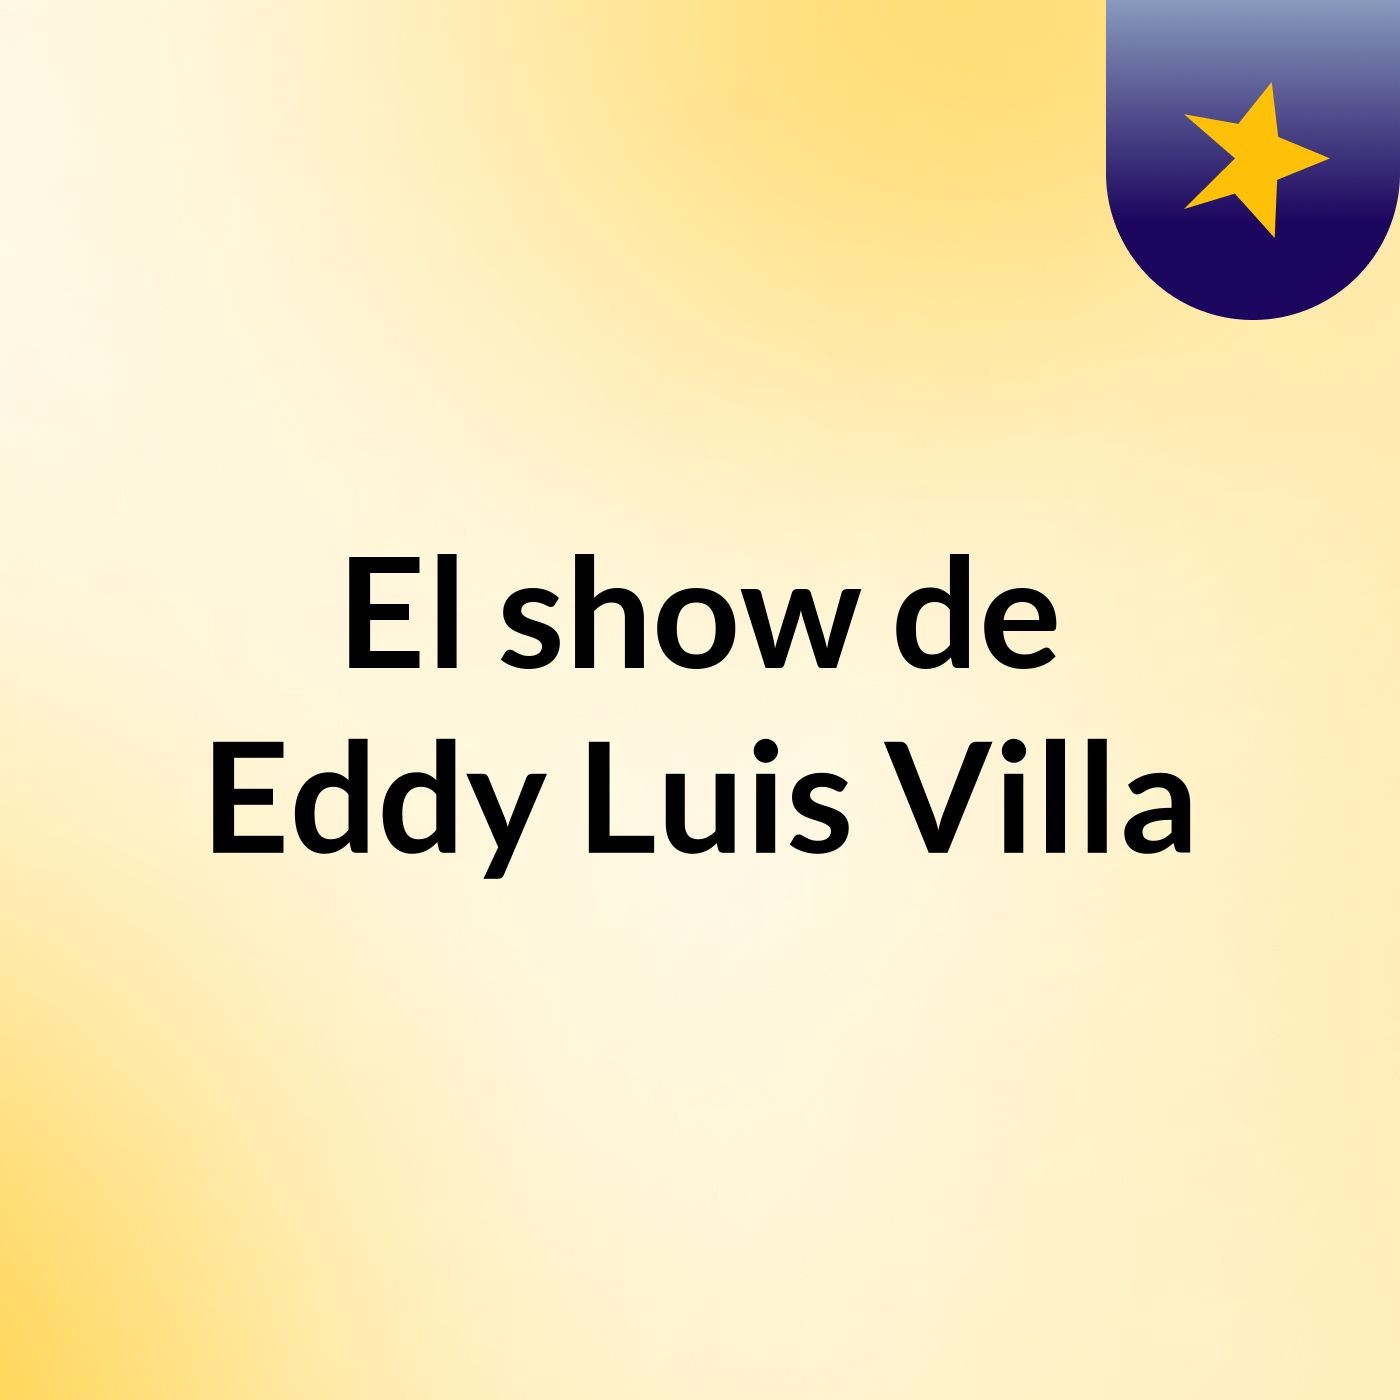 El show de Eddy Luis Villa